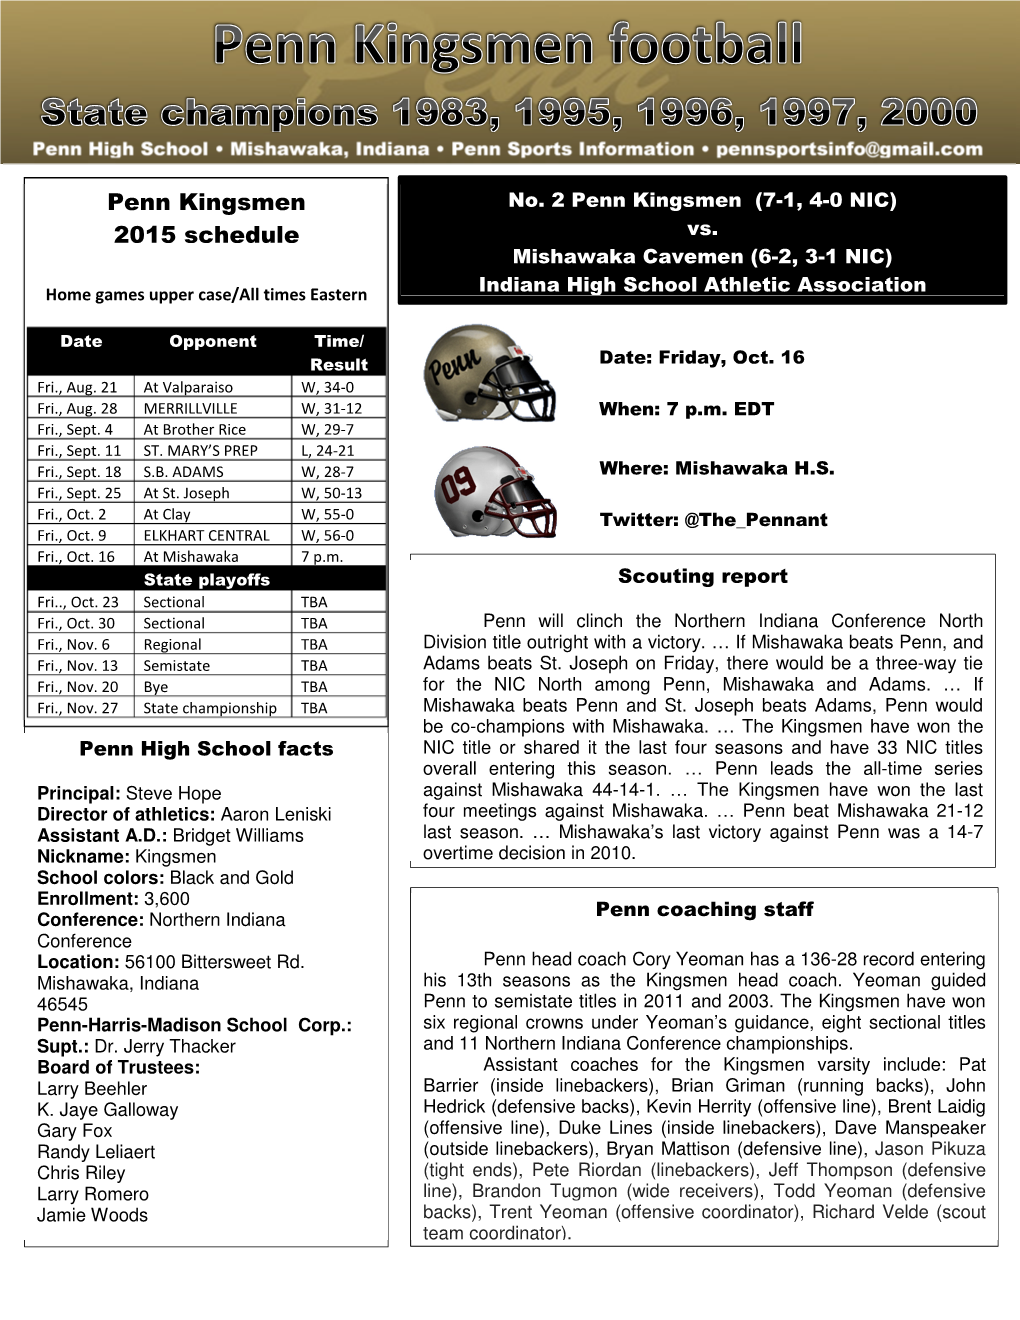 Penn Kingsmen 2015 Schedule